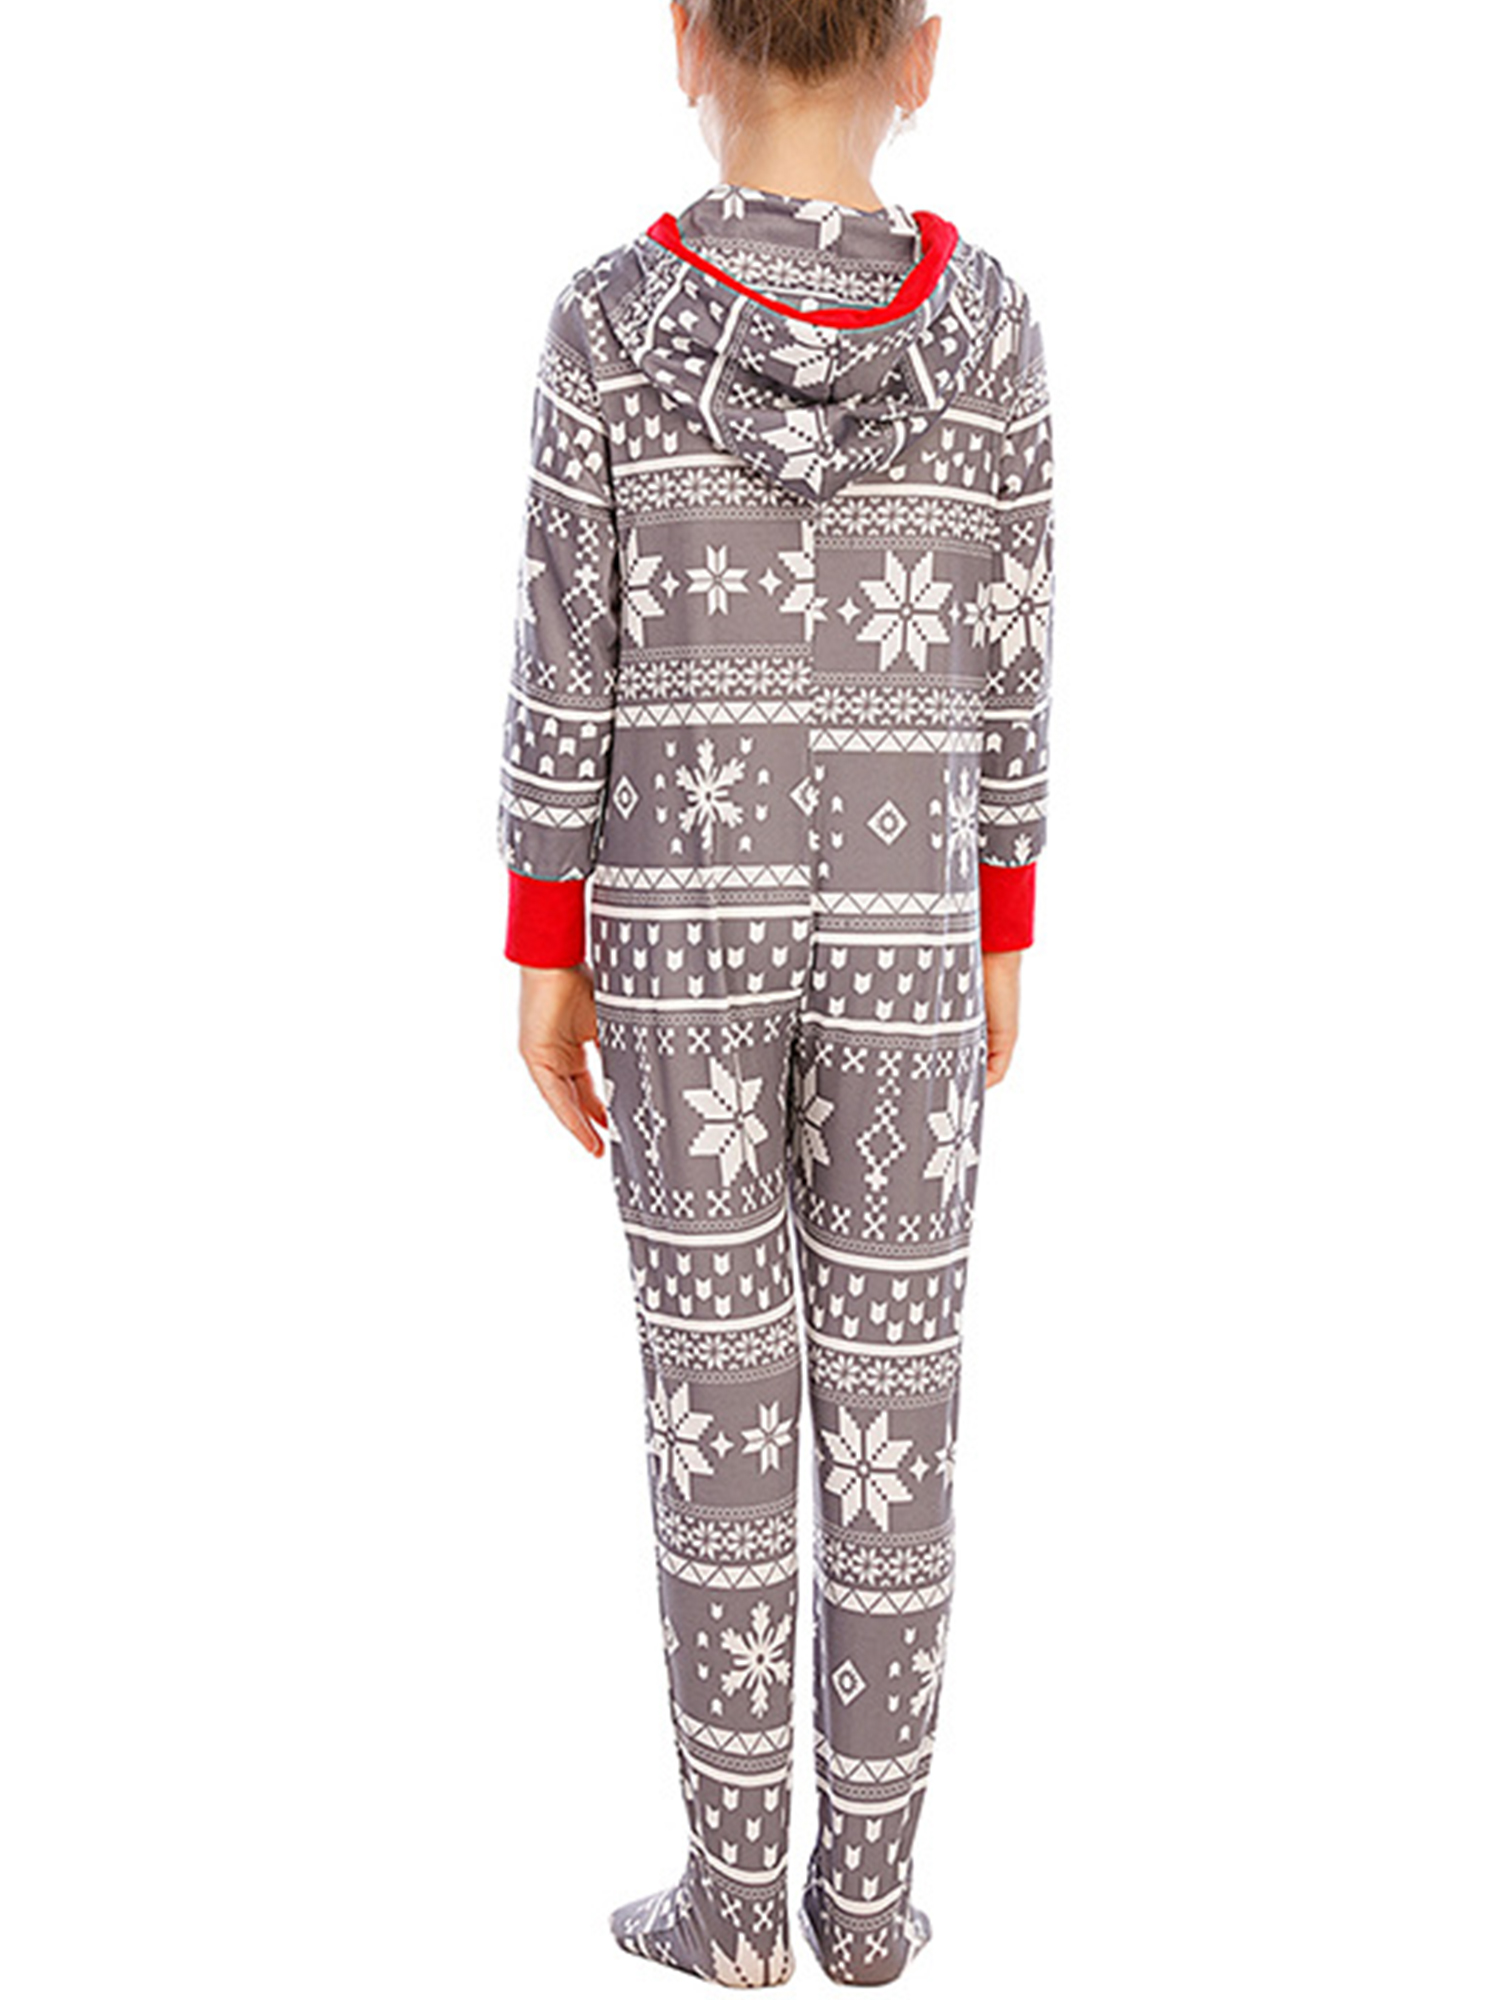 Bébé Garçons Filles Unisexe Noël Pyjamas Pyjama Coton Premier Cadeau De Noël Drôle